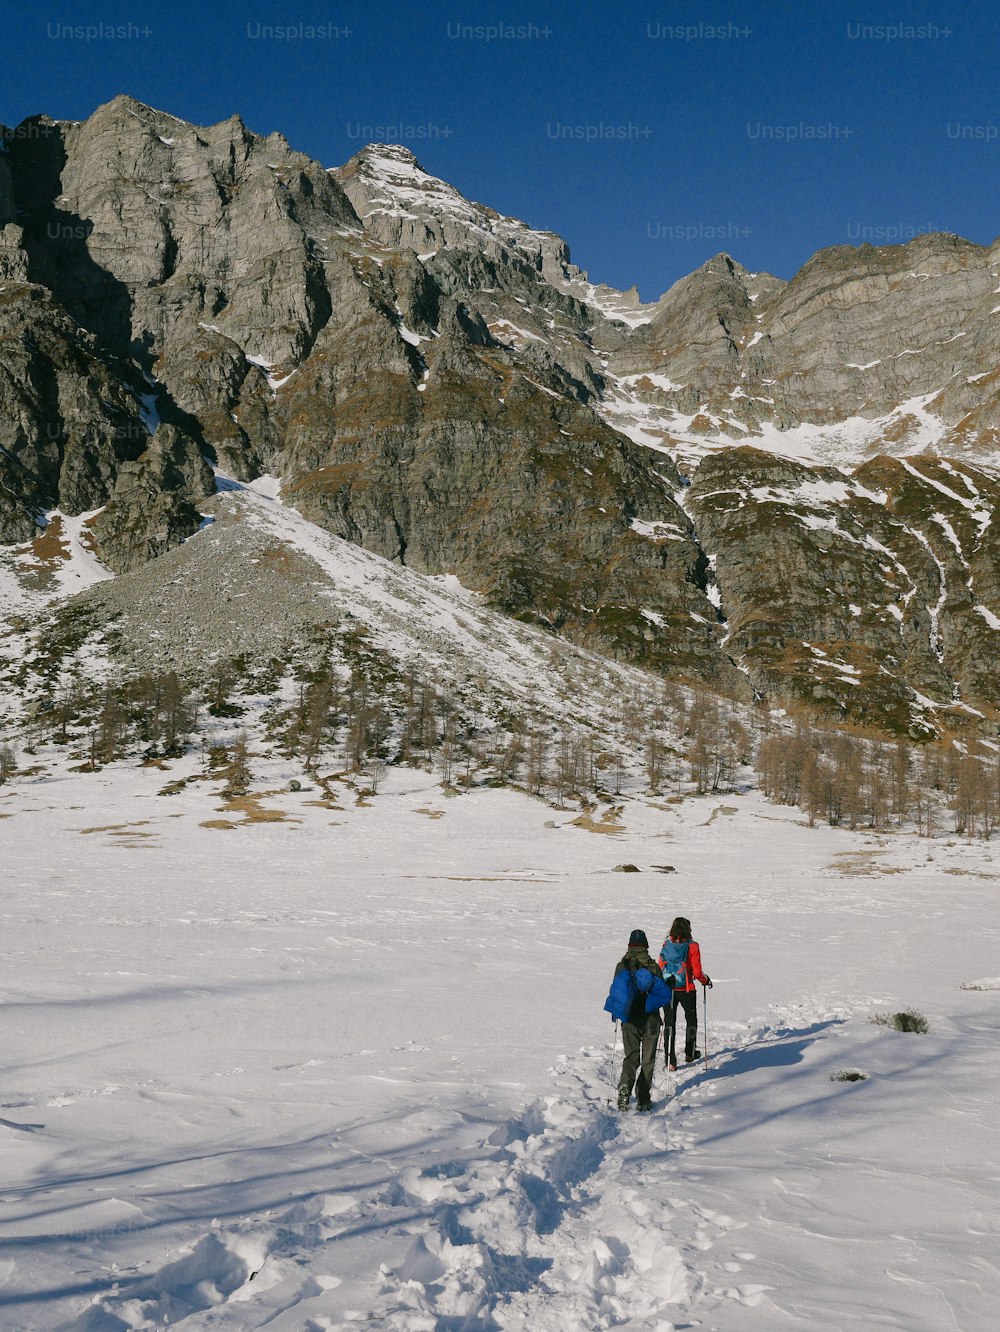 Un par de personas montando esquís a través de una pendiente cubierta de nieve